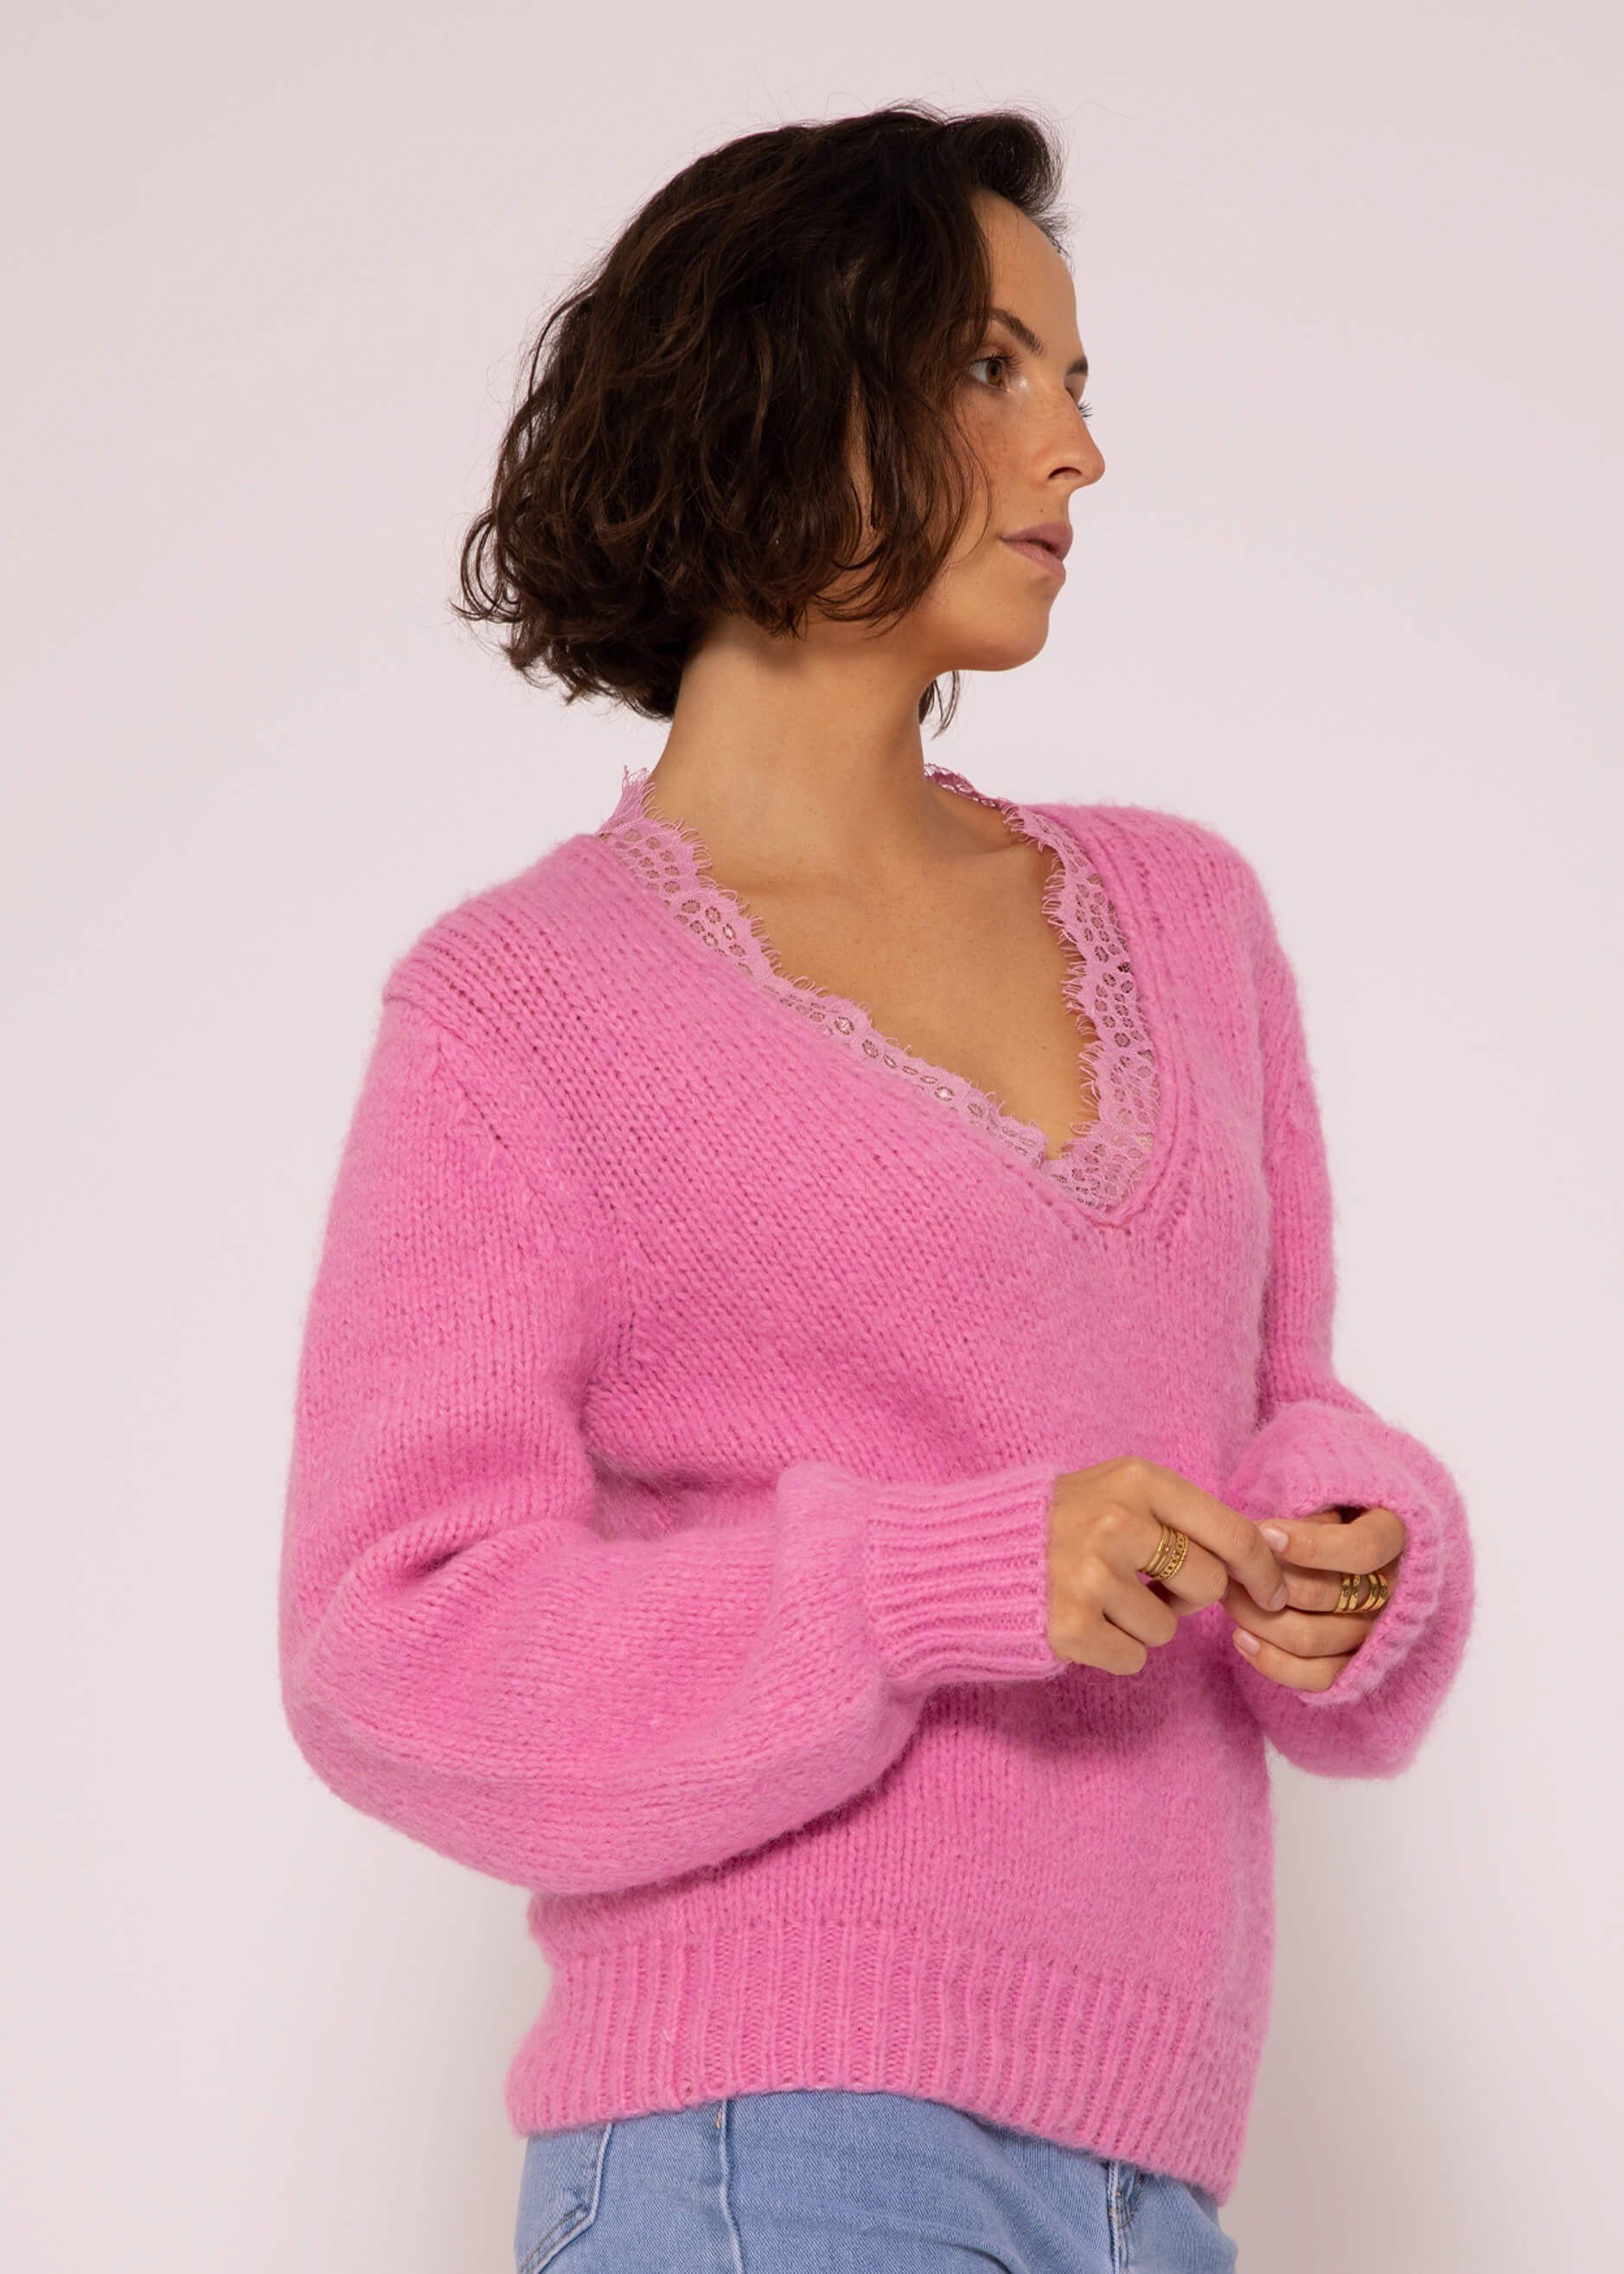 SASSYCLASSY Strickpullover Oversize Pullover Damen Lässiger Pink Strickpullover weichem Grobstrick Spitzen-Ausschnitt aus mit